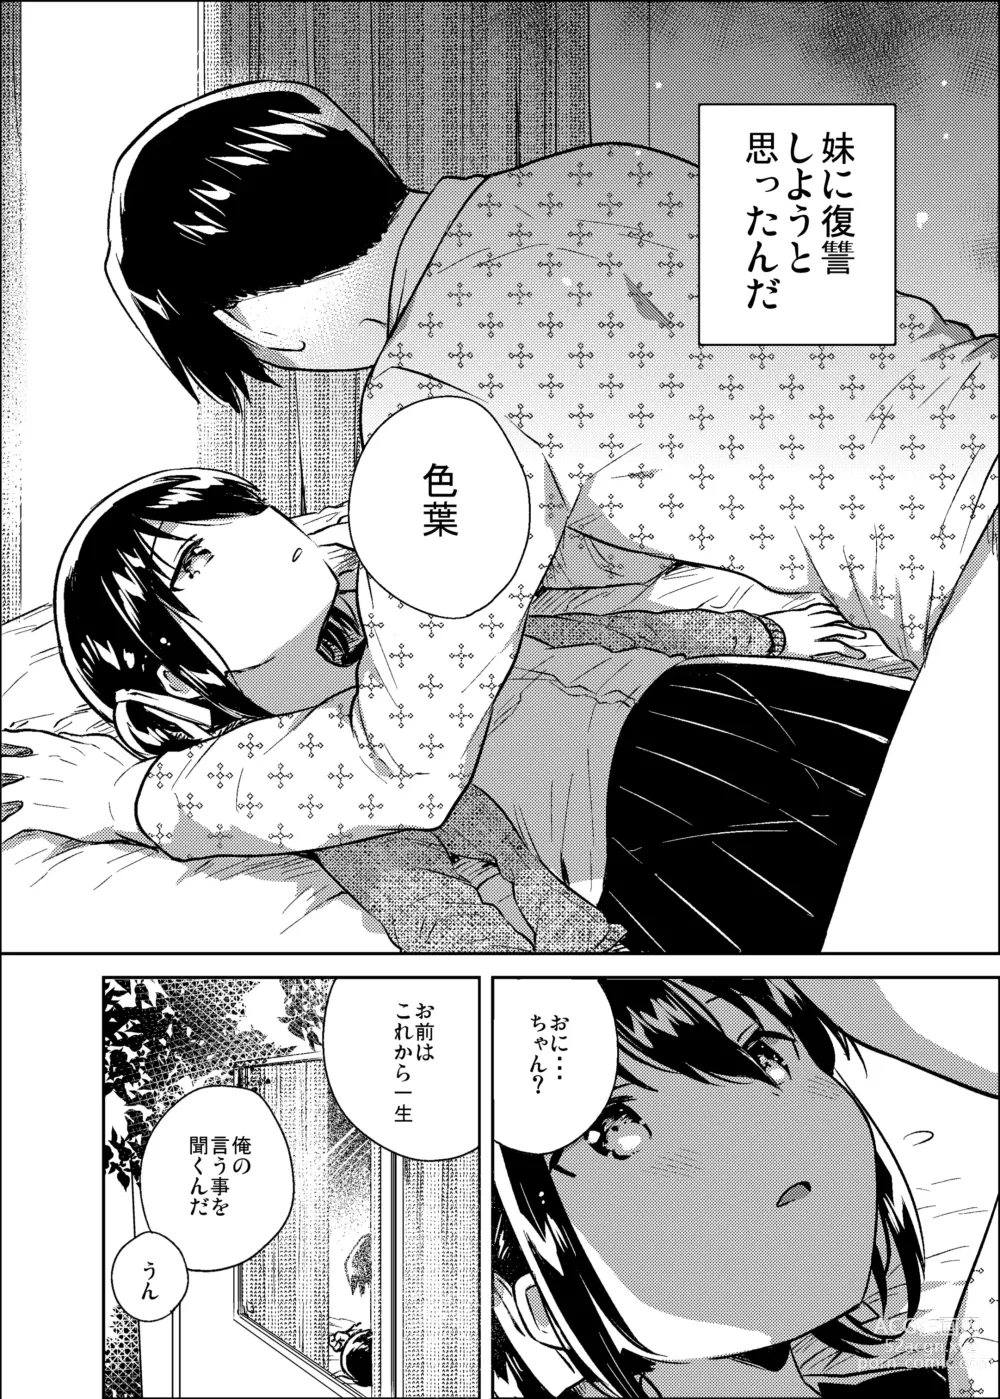 Page 9 of doujinshi Imouto wa Kanji ga Yomenai